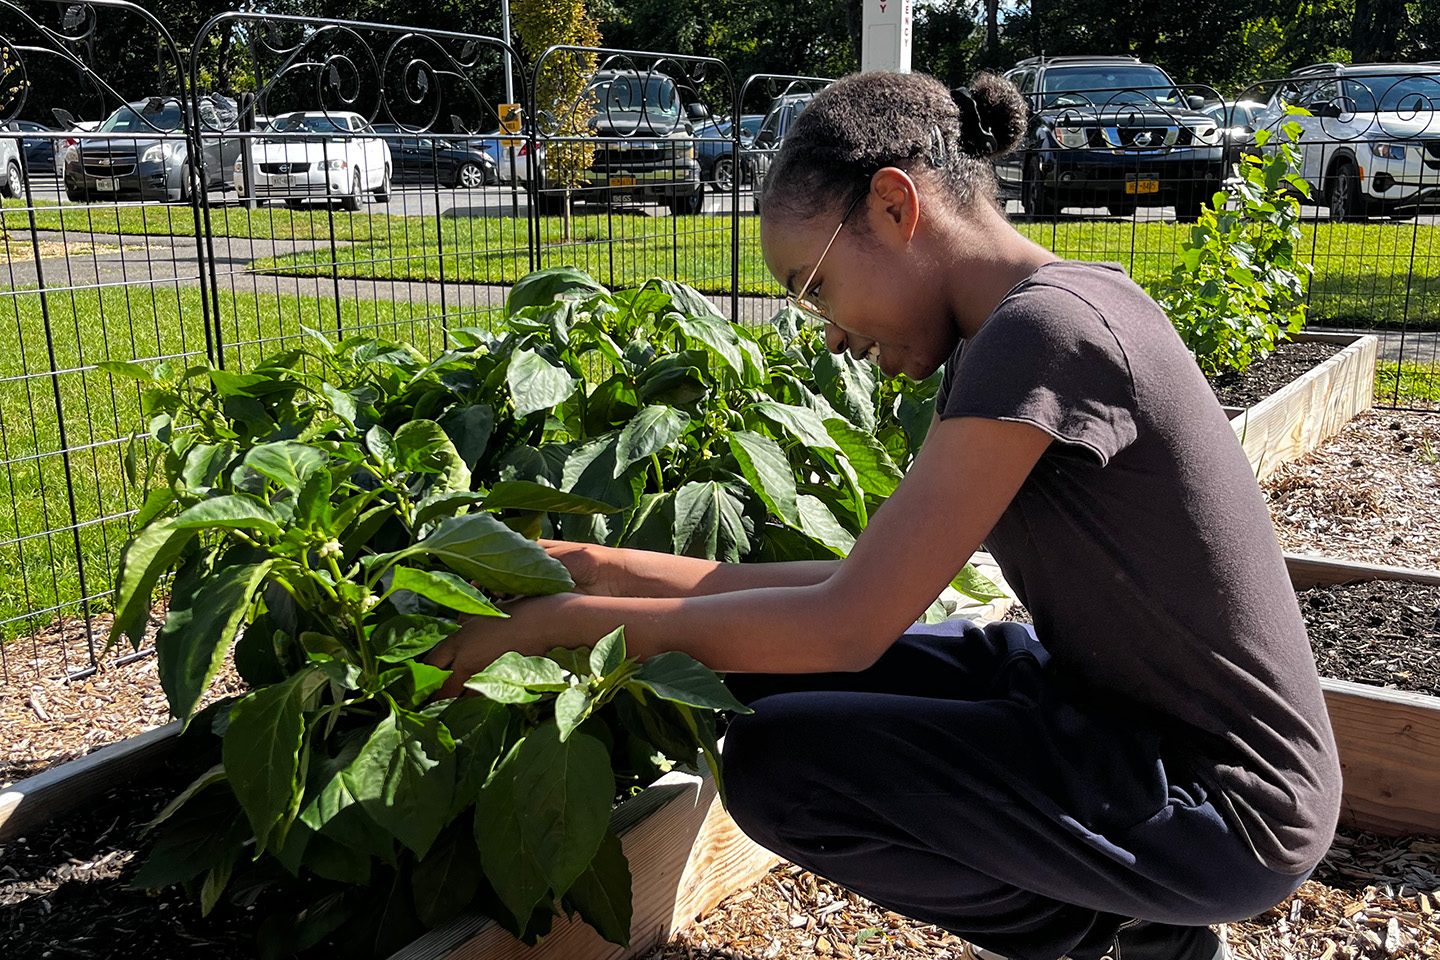 Student garden volunteer tending to the plants in the ӰƬ University Community Garden.